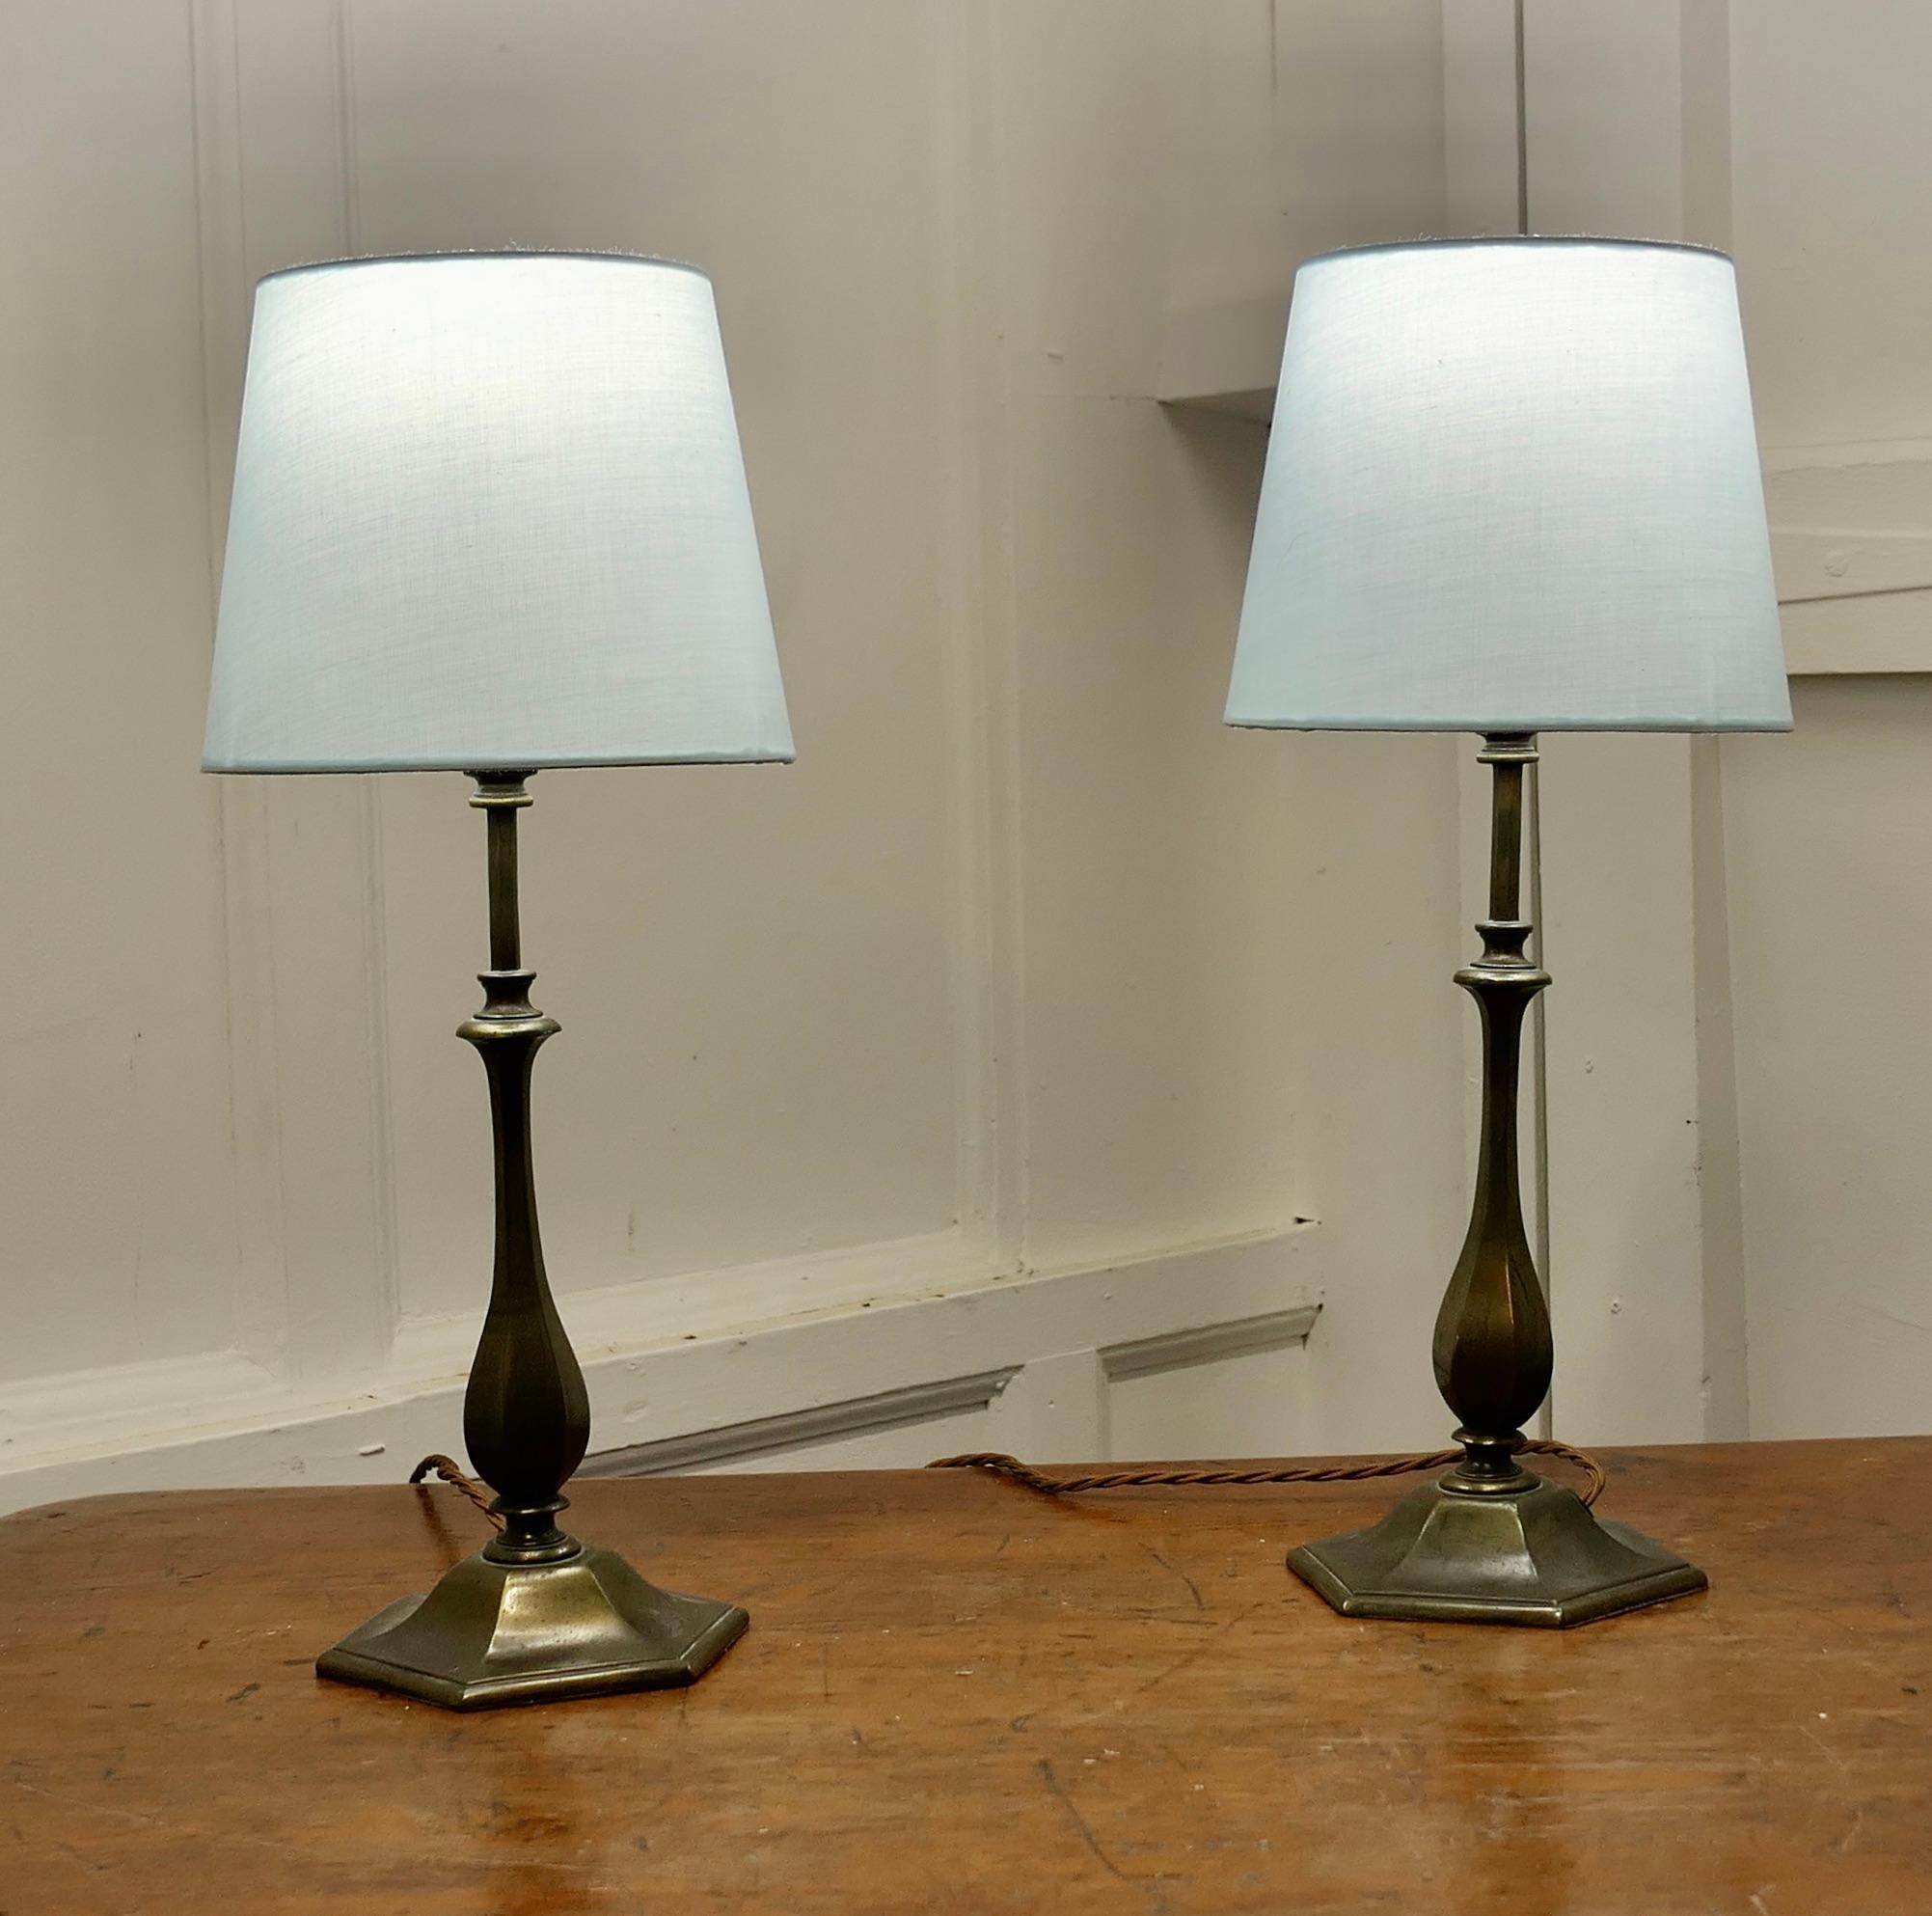 Paire de  Lampes de table en laiton de style Art Déco

Il s'agit d'une paire de lampes très élégantes, fabriquées en laiton noirci par le temps.
Les lampes peuvent être livrées avec les abat-jour si le câblage est neuf et si elles sont en bon